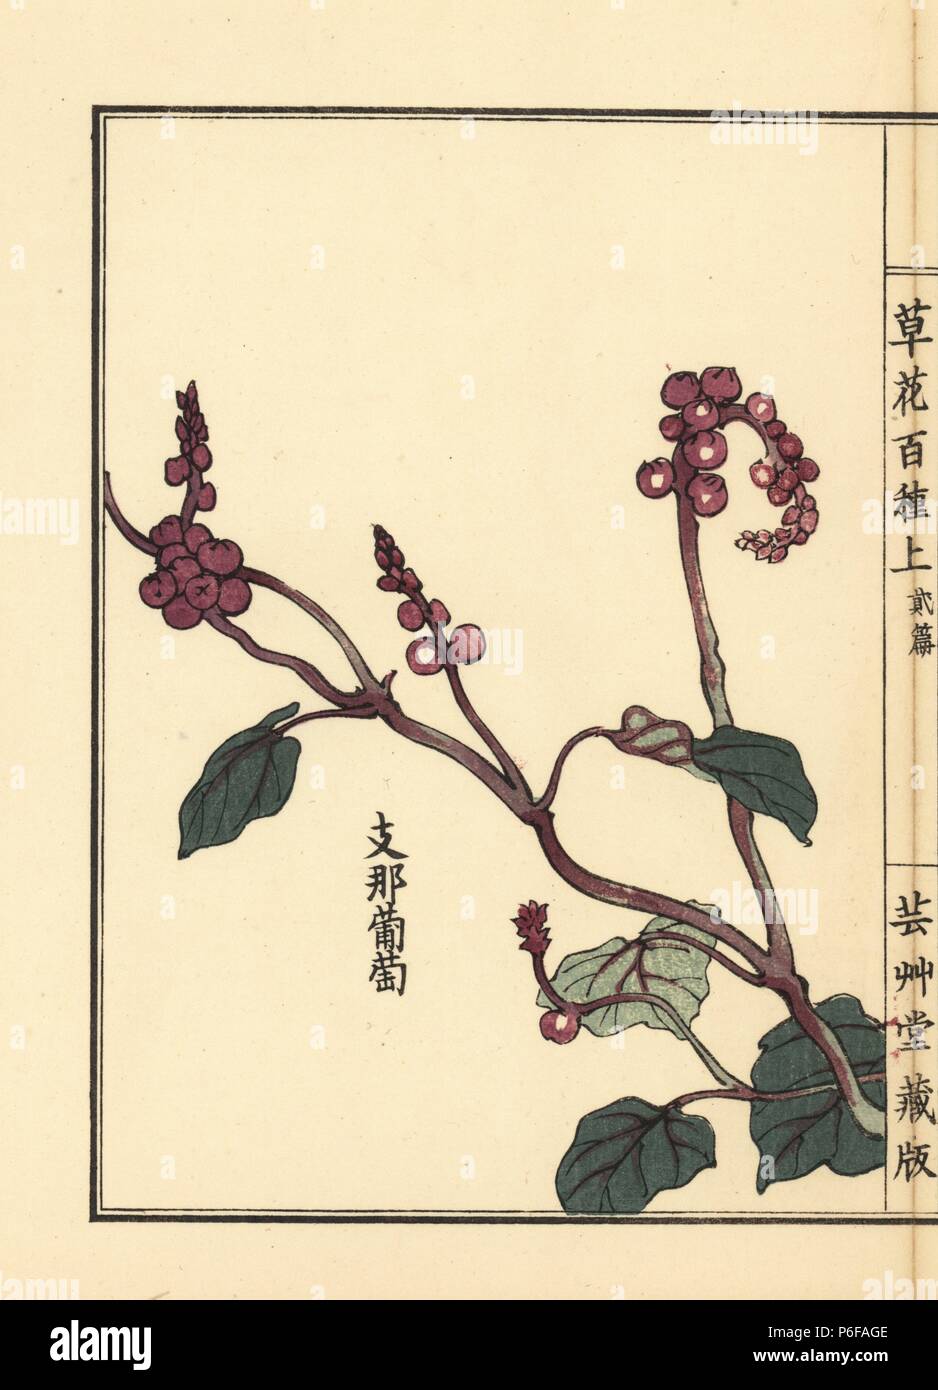 Yamabudou or crimson glory vine, Vitis coignetiae. Handcoloured woodblock print by Kono Bairei from Kusa Bana Hyakushu (One Hundred Varieties of Flowers), Tokyo, Yamada, 1901. Stock Photo